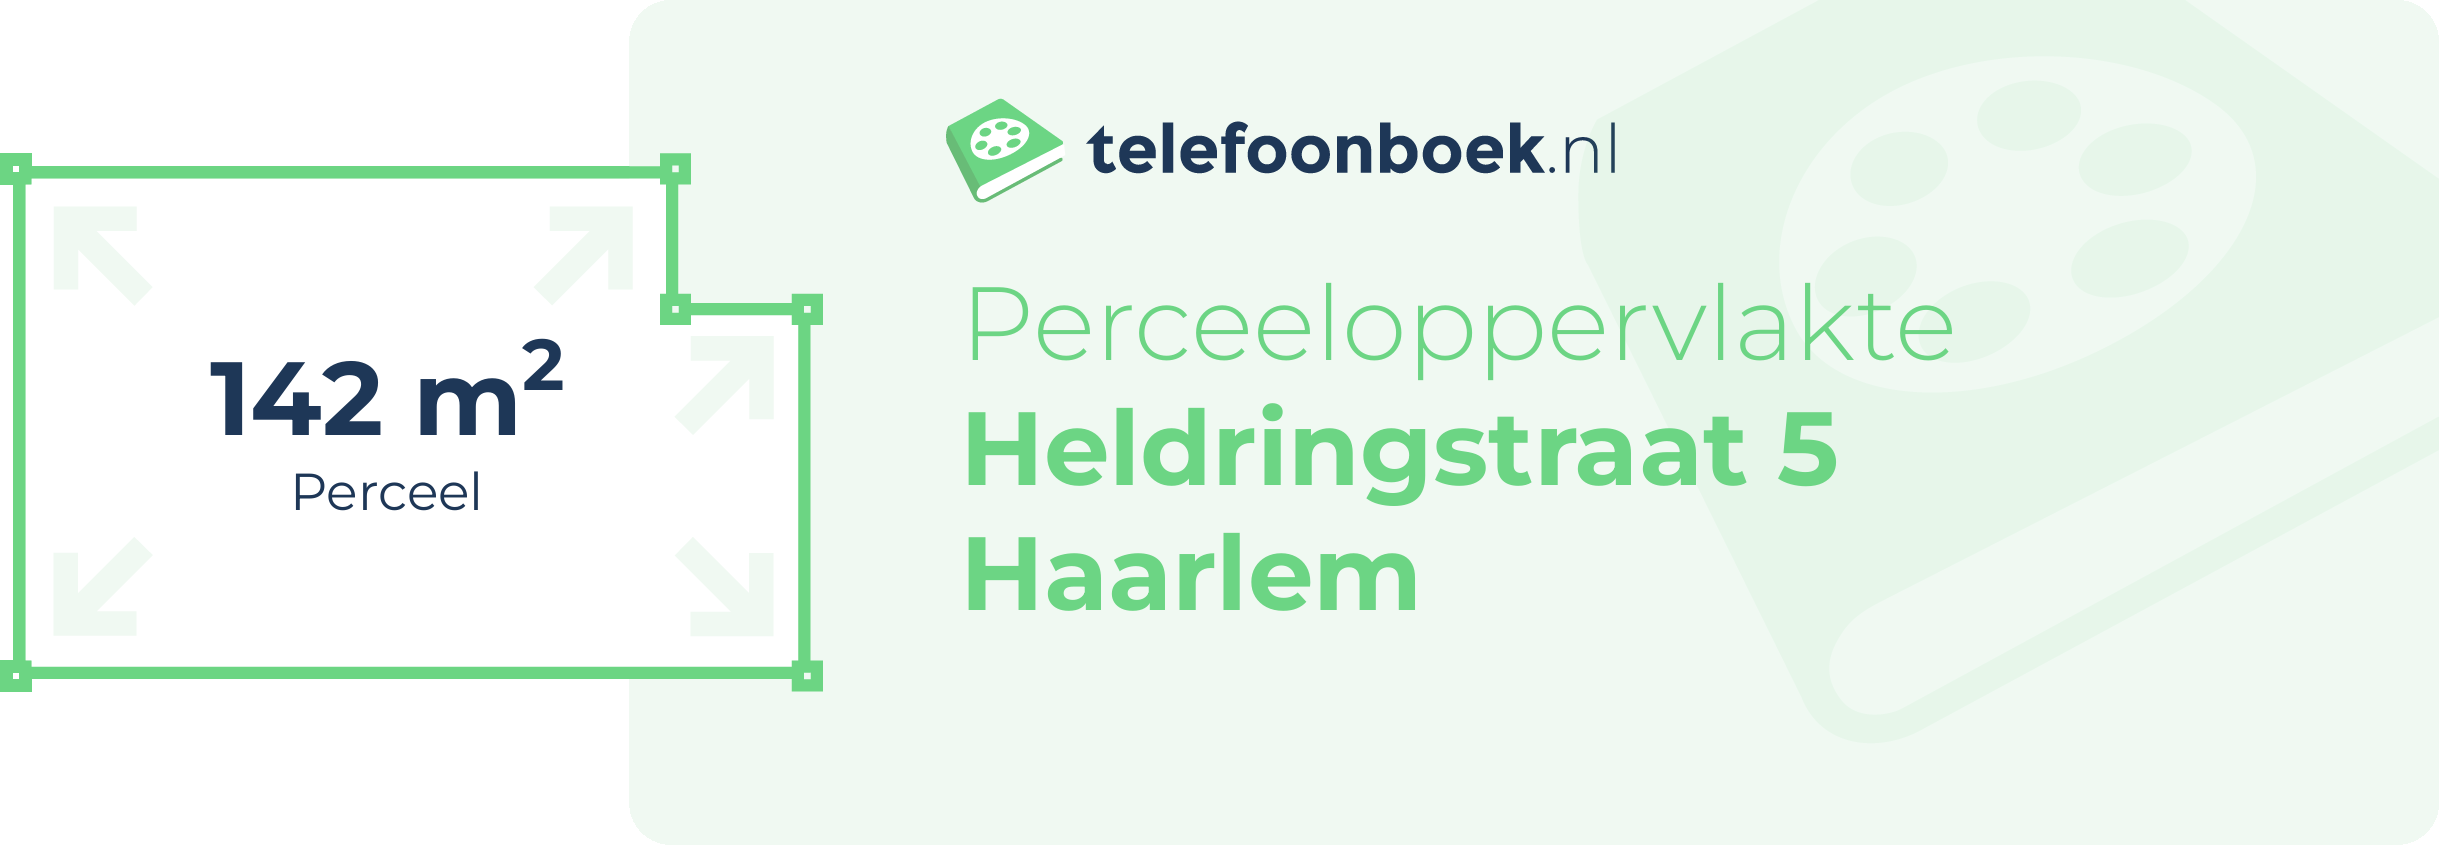 Perceeloppervlakte Heldringstraat 5 Haarlem